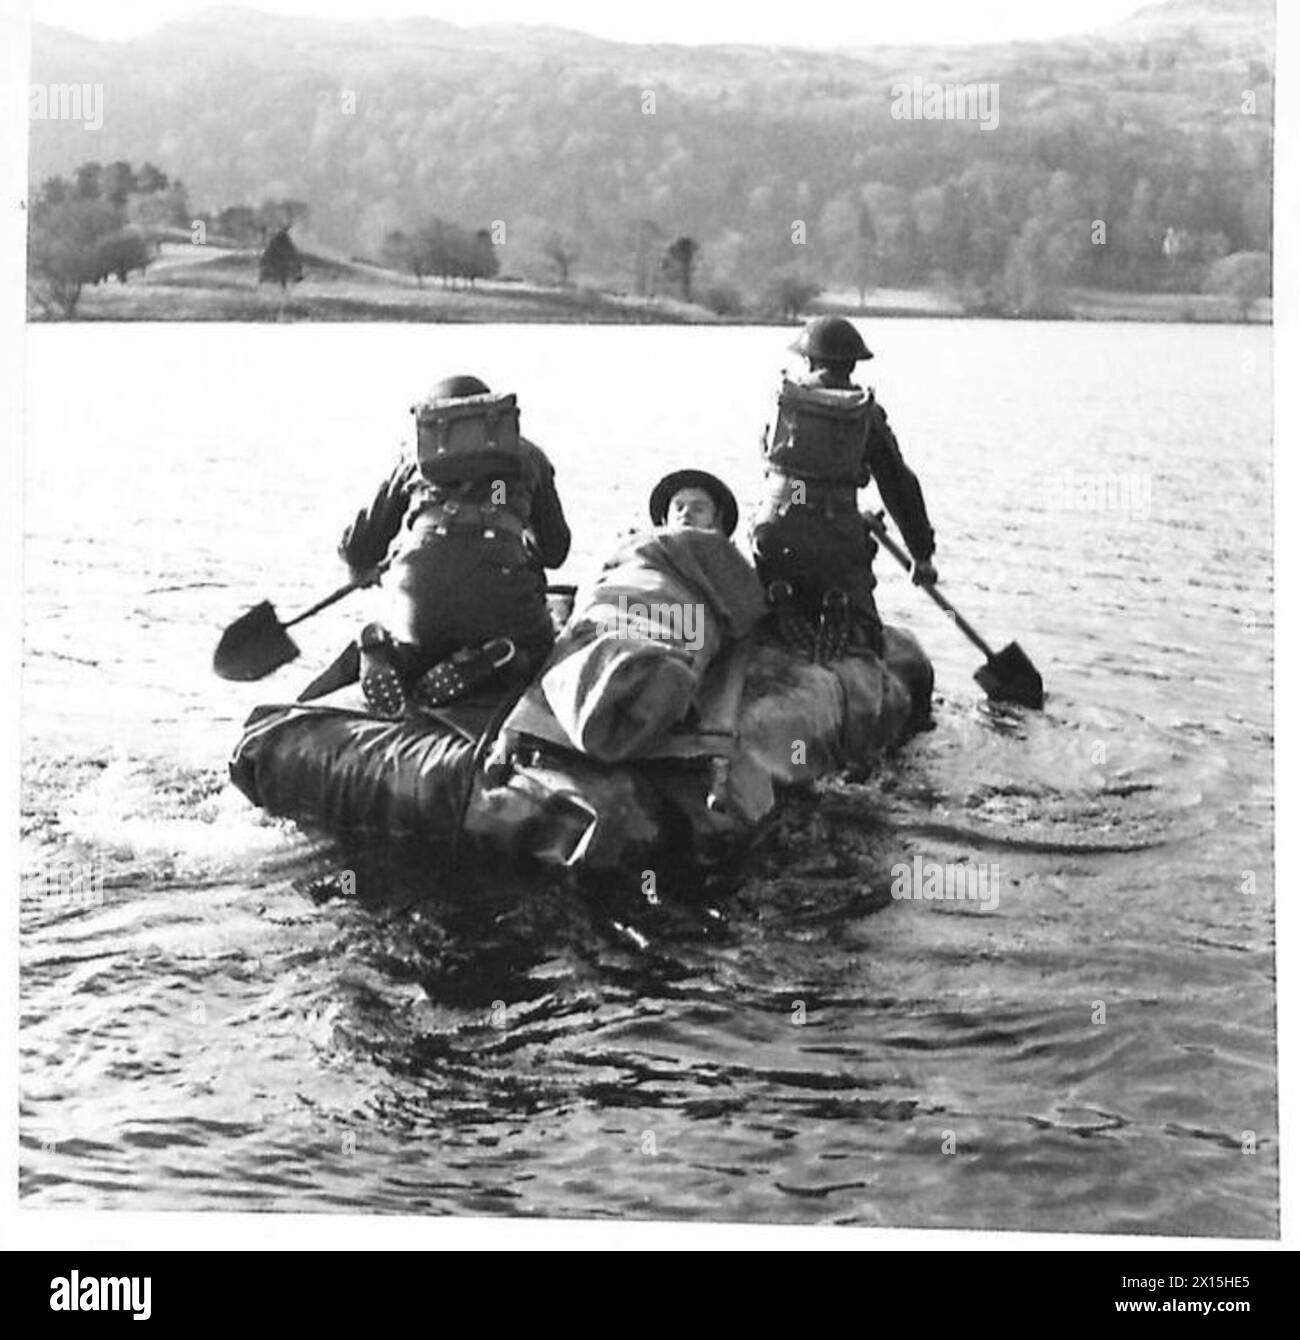 Eine FELDAMBULANZEINHEIT IM KAMPFTRAINING - zwei medizinische Pfleger nehmen einen „Unfall“ über einen See auf einem improvisierten Schiff. Sie besteht aus drei Strohballen, die mit einem Leinwandtuch umwickelt sind. Pik wird verwendet, um das improvisierte Floß British Army zu paddeln Stockfoto